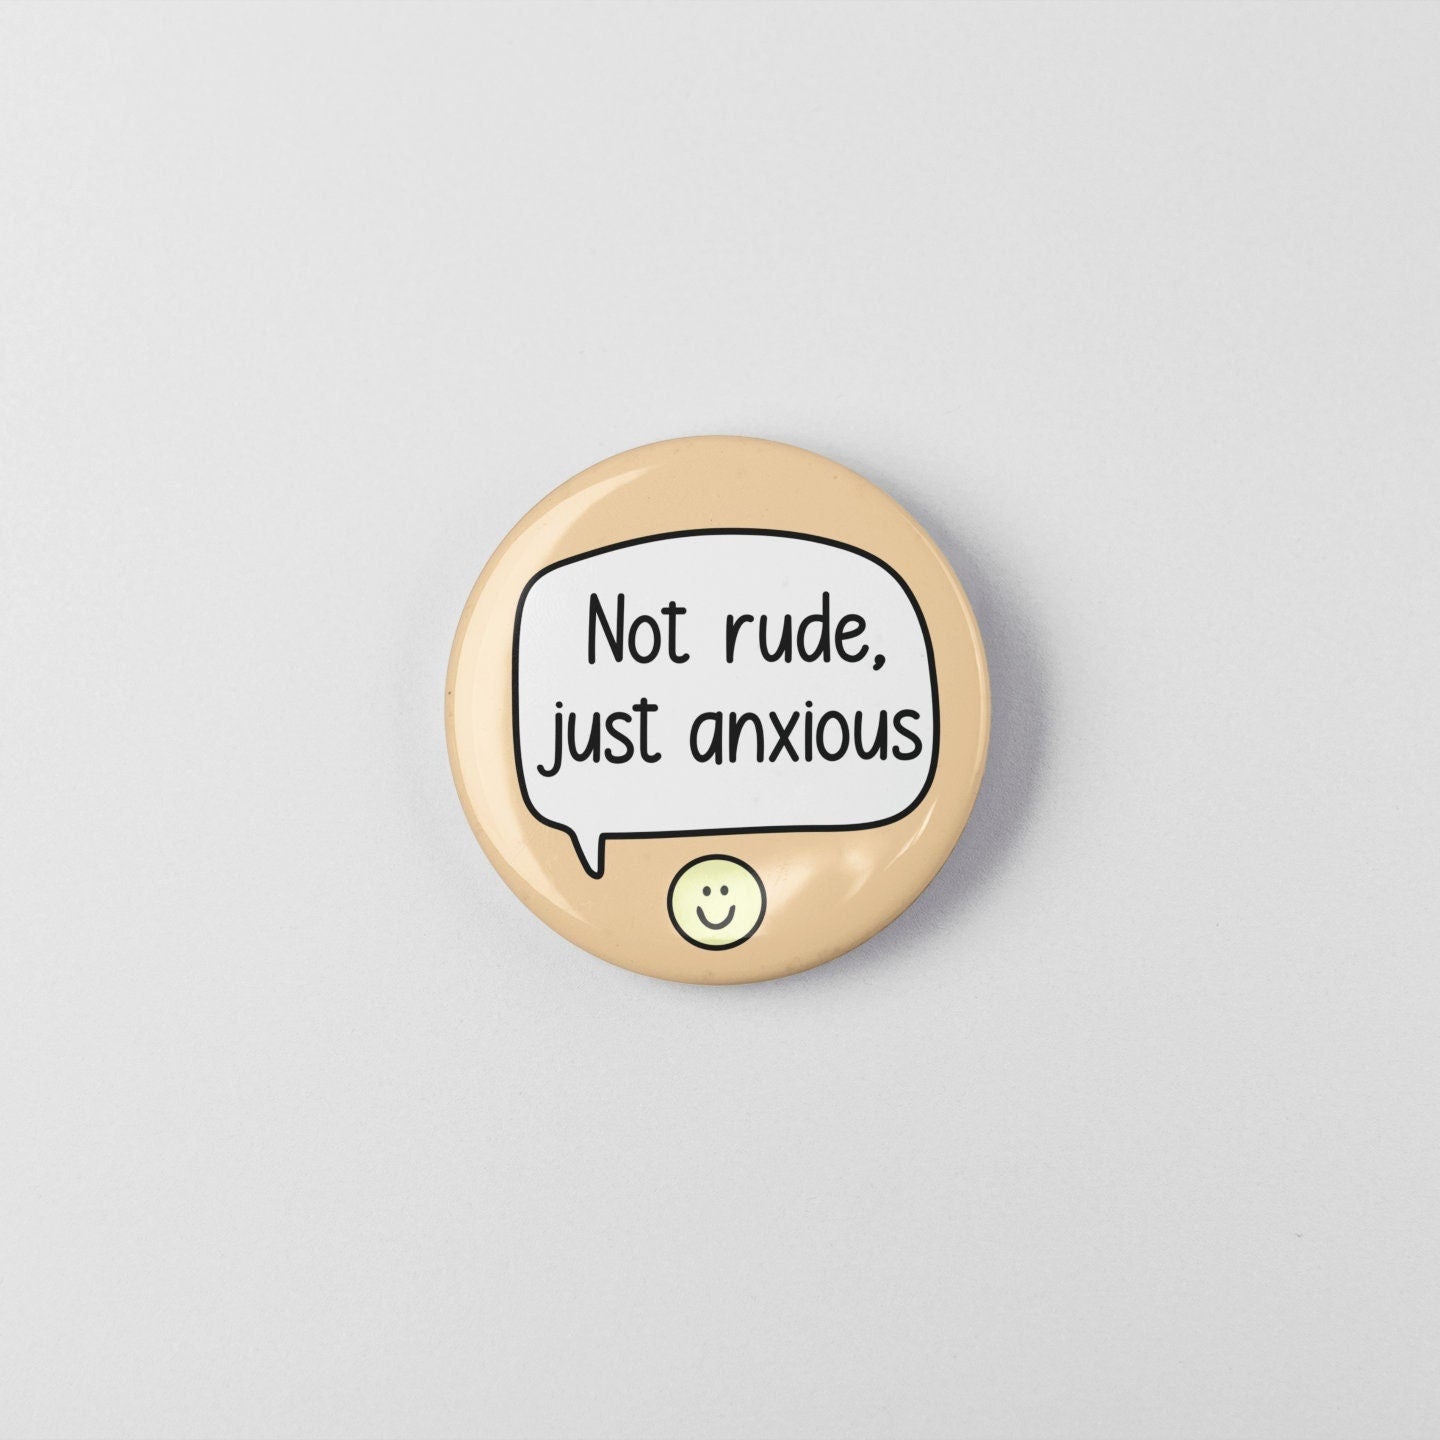 Not Rude, Just Anxious - Pin Badge | Social Anxiety Pin - Anxiety Badges